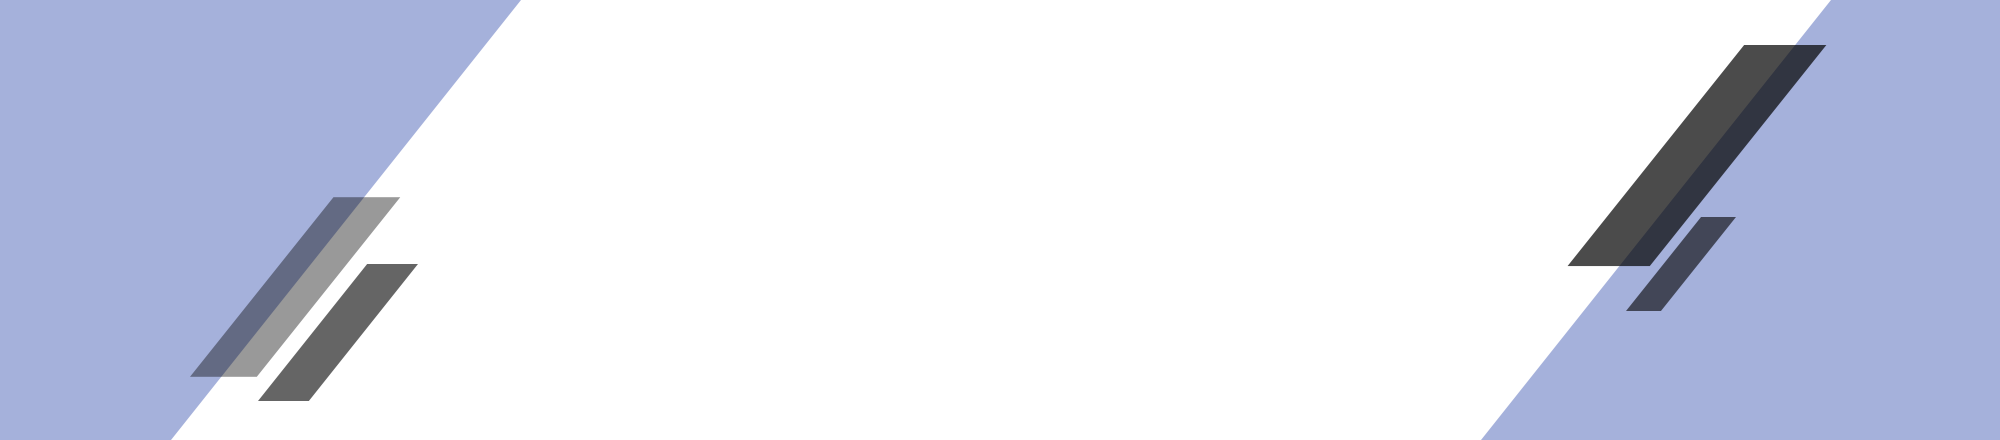 recruit_bnr_off